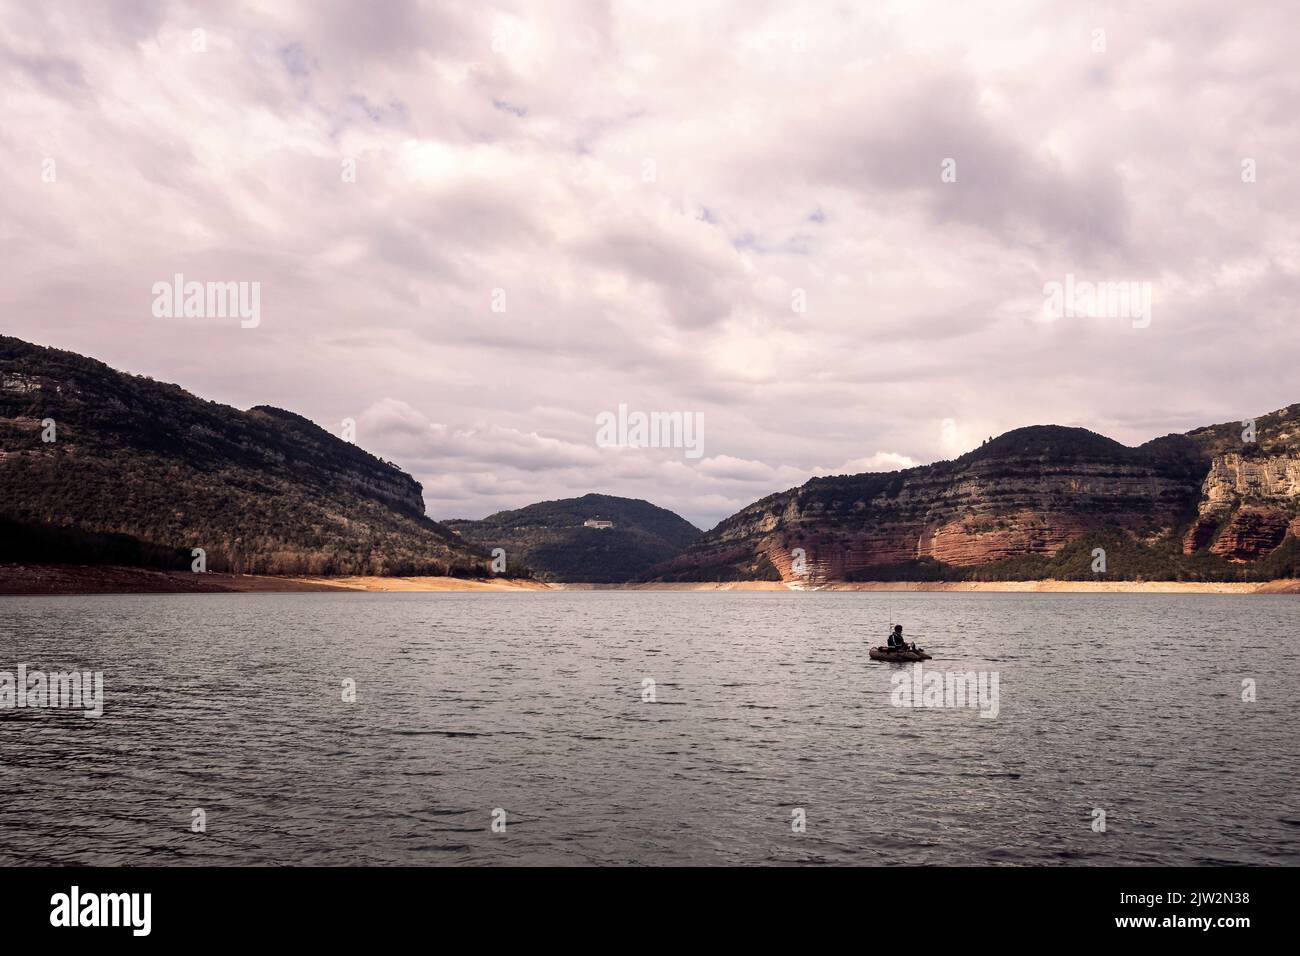 Pescatore in barca sulle acque ondulate del fiume contro le montagne e cielo nuvoloso in una giornata grigia nella natura Foto Stock